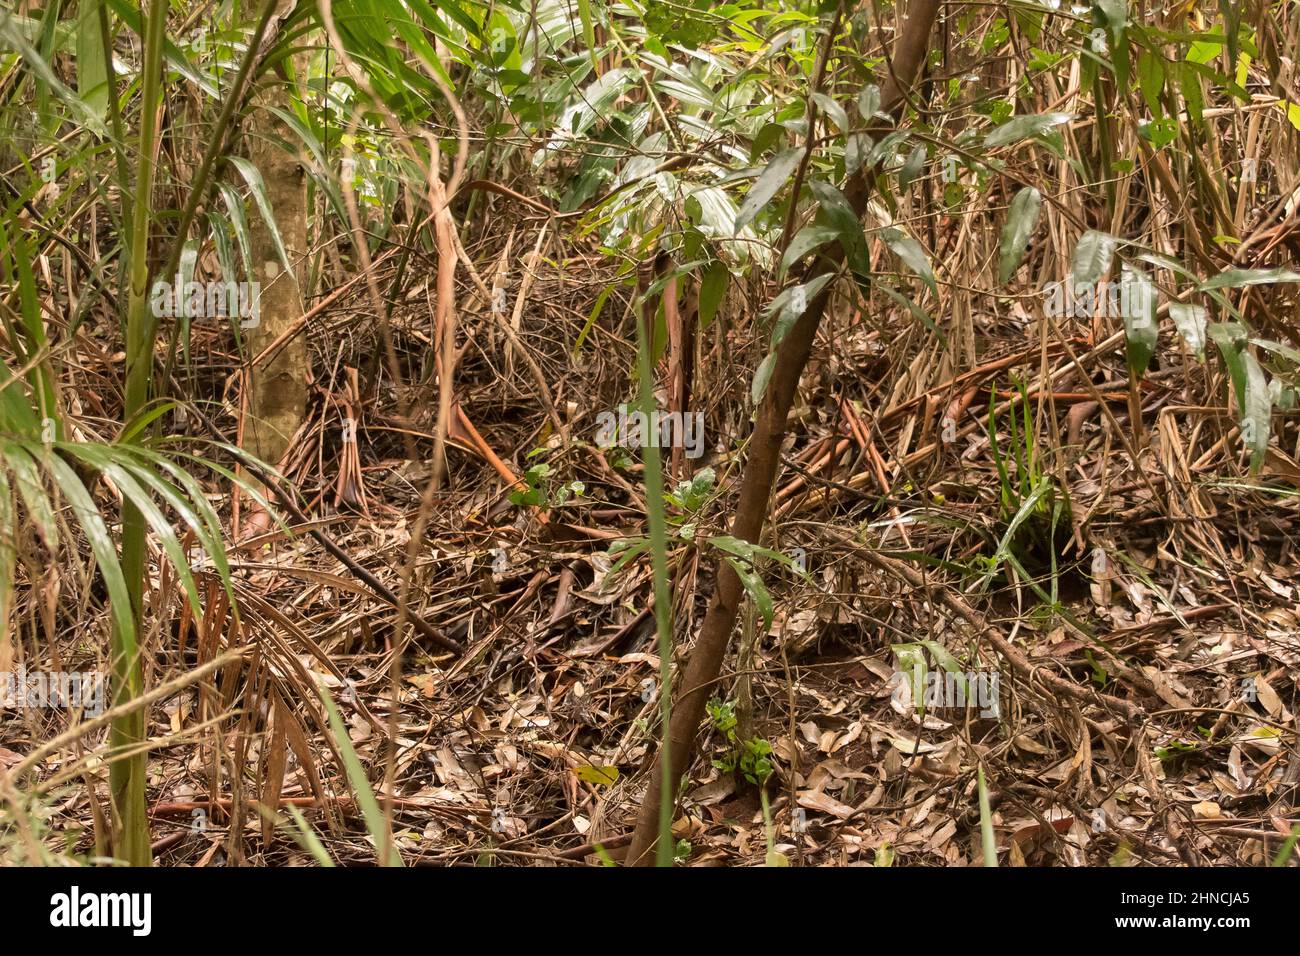 Selva tropical subtropical de tierras bajas. Sotobosque y masa enredada de frondas y ramas en el suelo del bosque después de la lluvia del verano, Queensland, Australia. Foto de stock